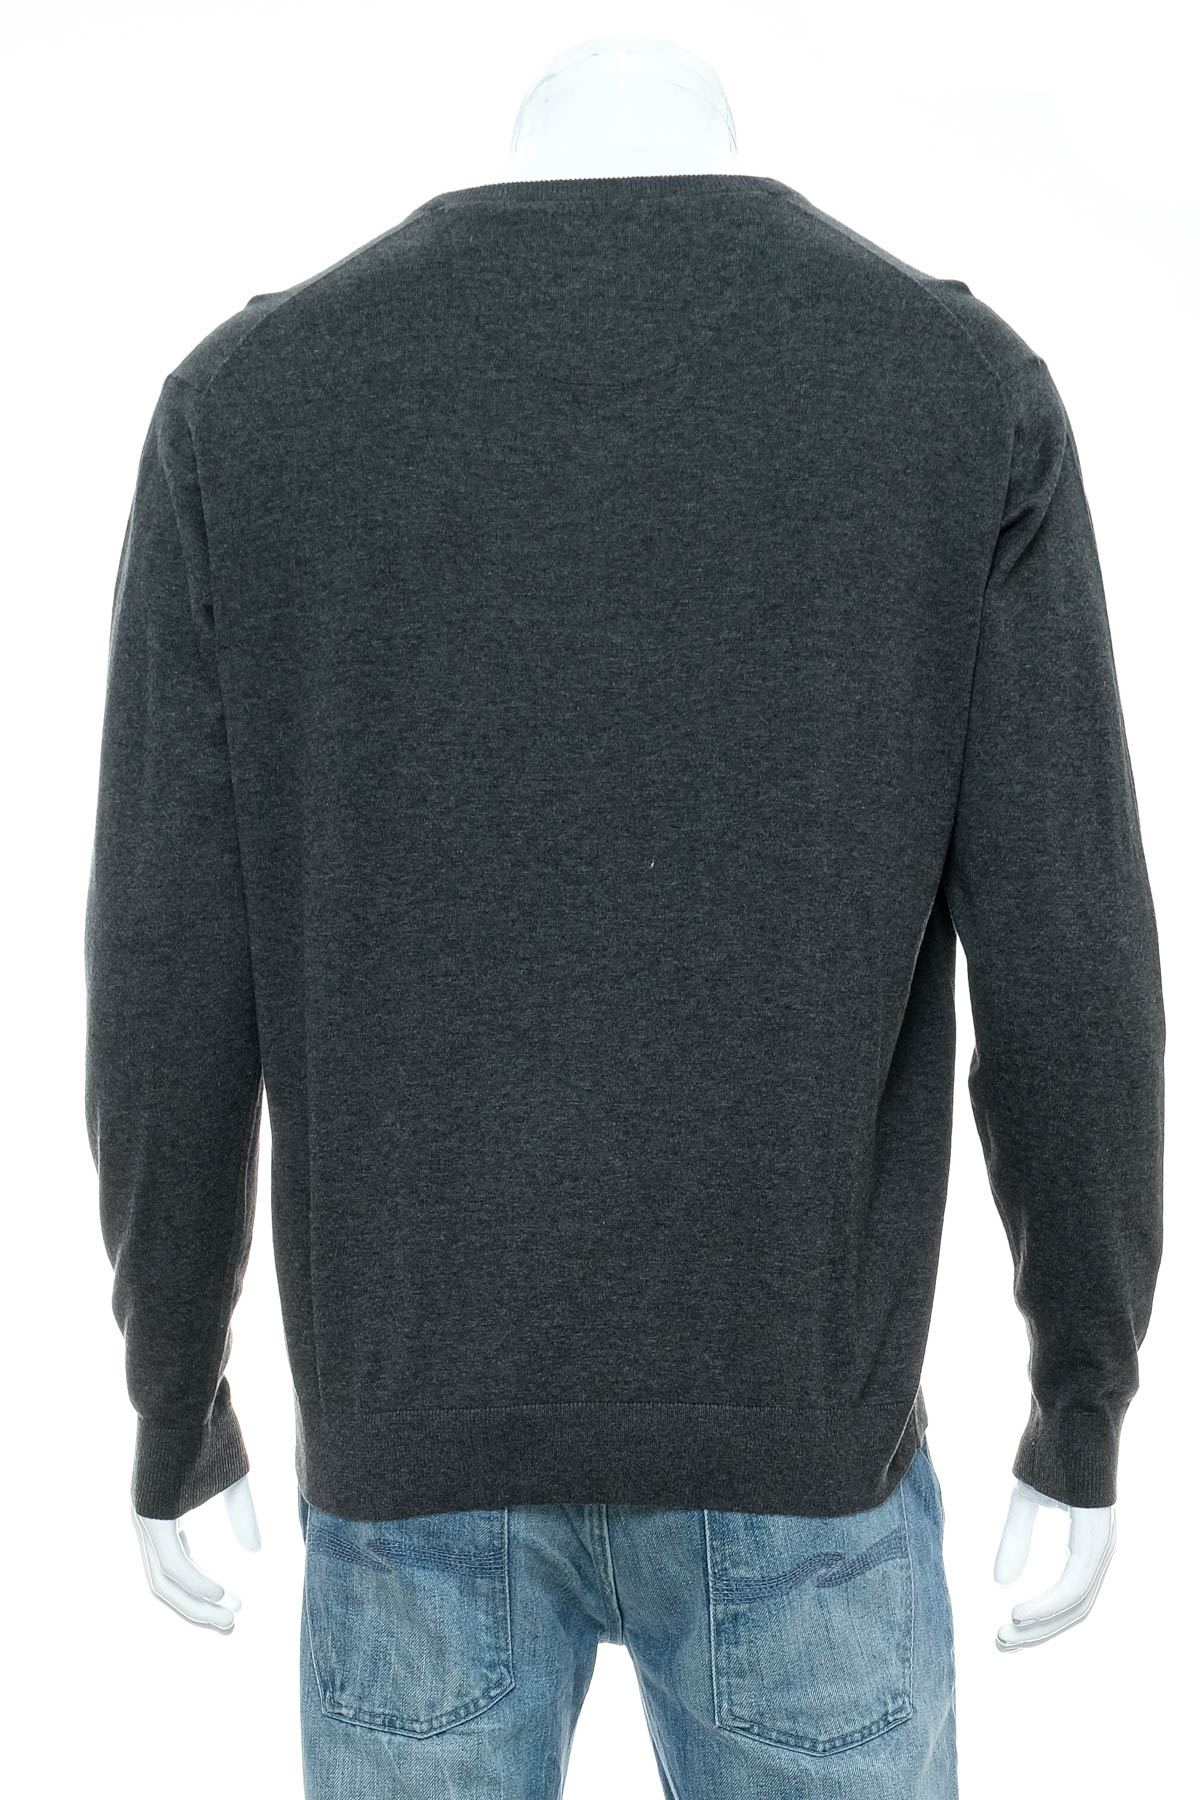 Men's sweater - Nils Sundstrom - 1